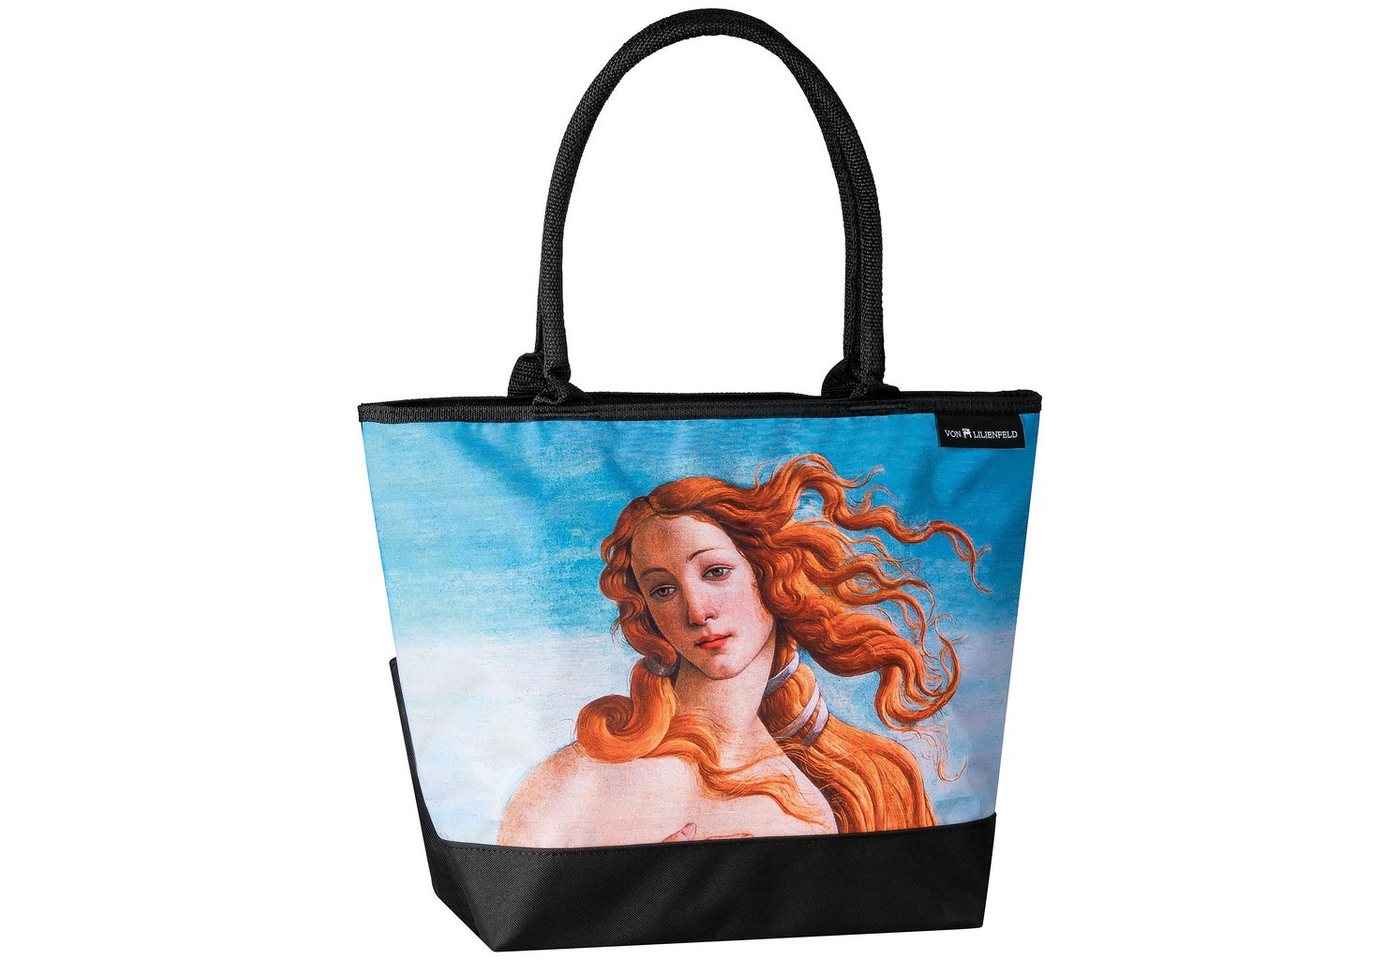 von Lilienfeld Handtasche Tasche mit Kunstmotiv Sandro Botticelli Geburt der Venus Shopper, besonders strapazierfähig, leicht von von Lilienfeld